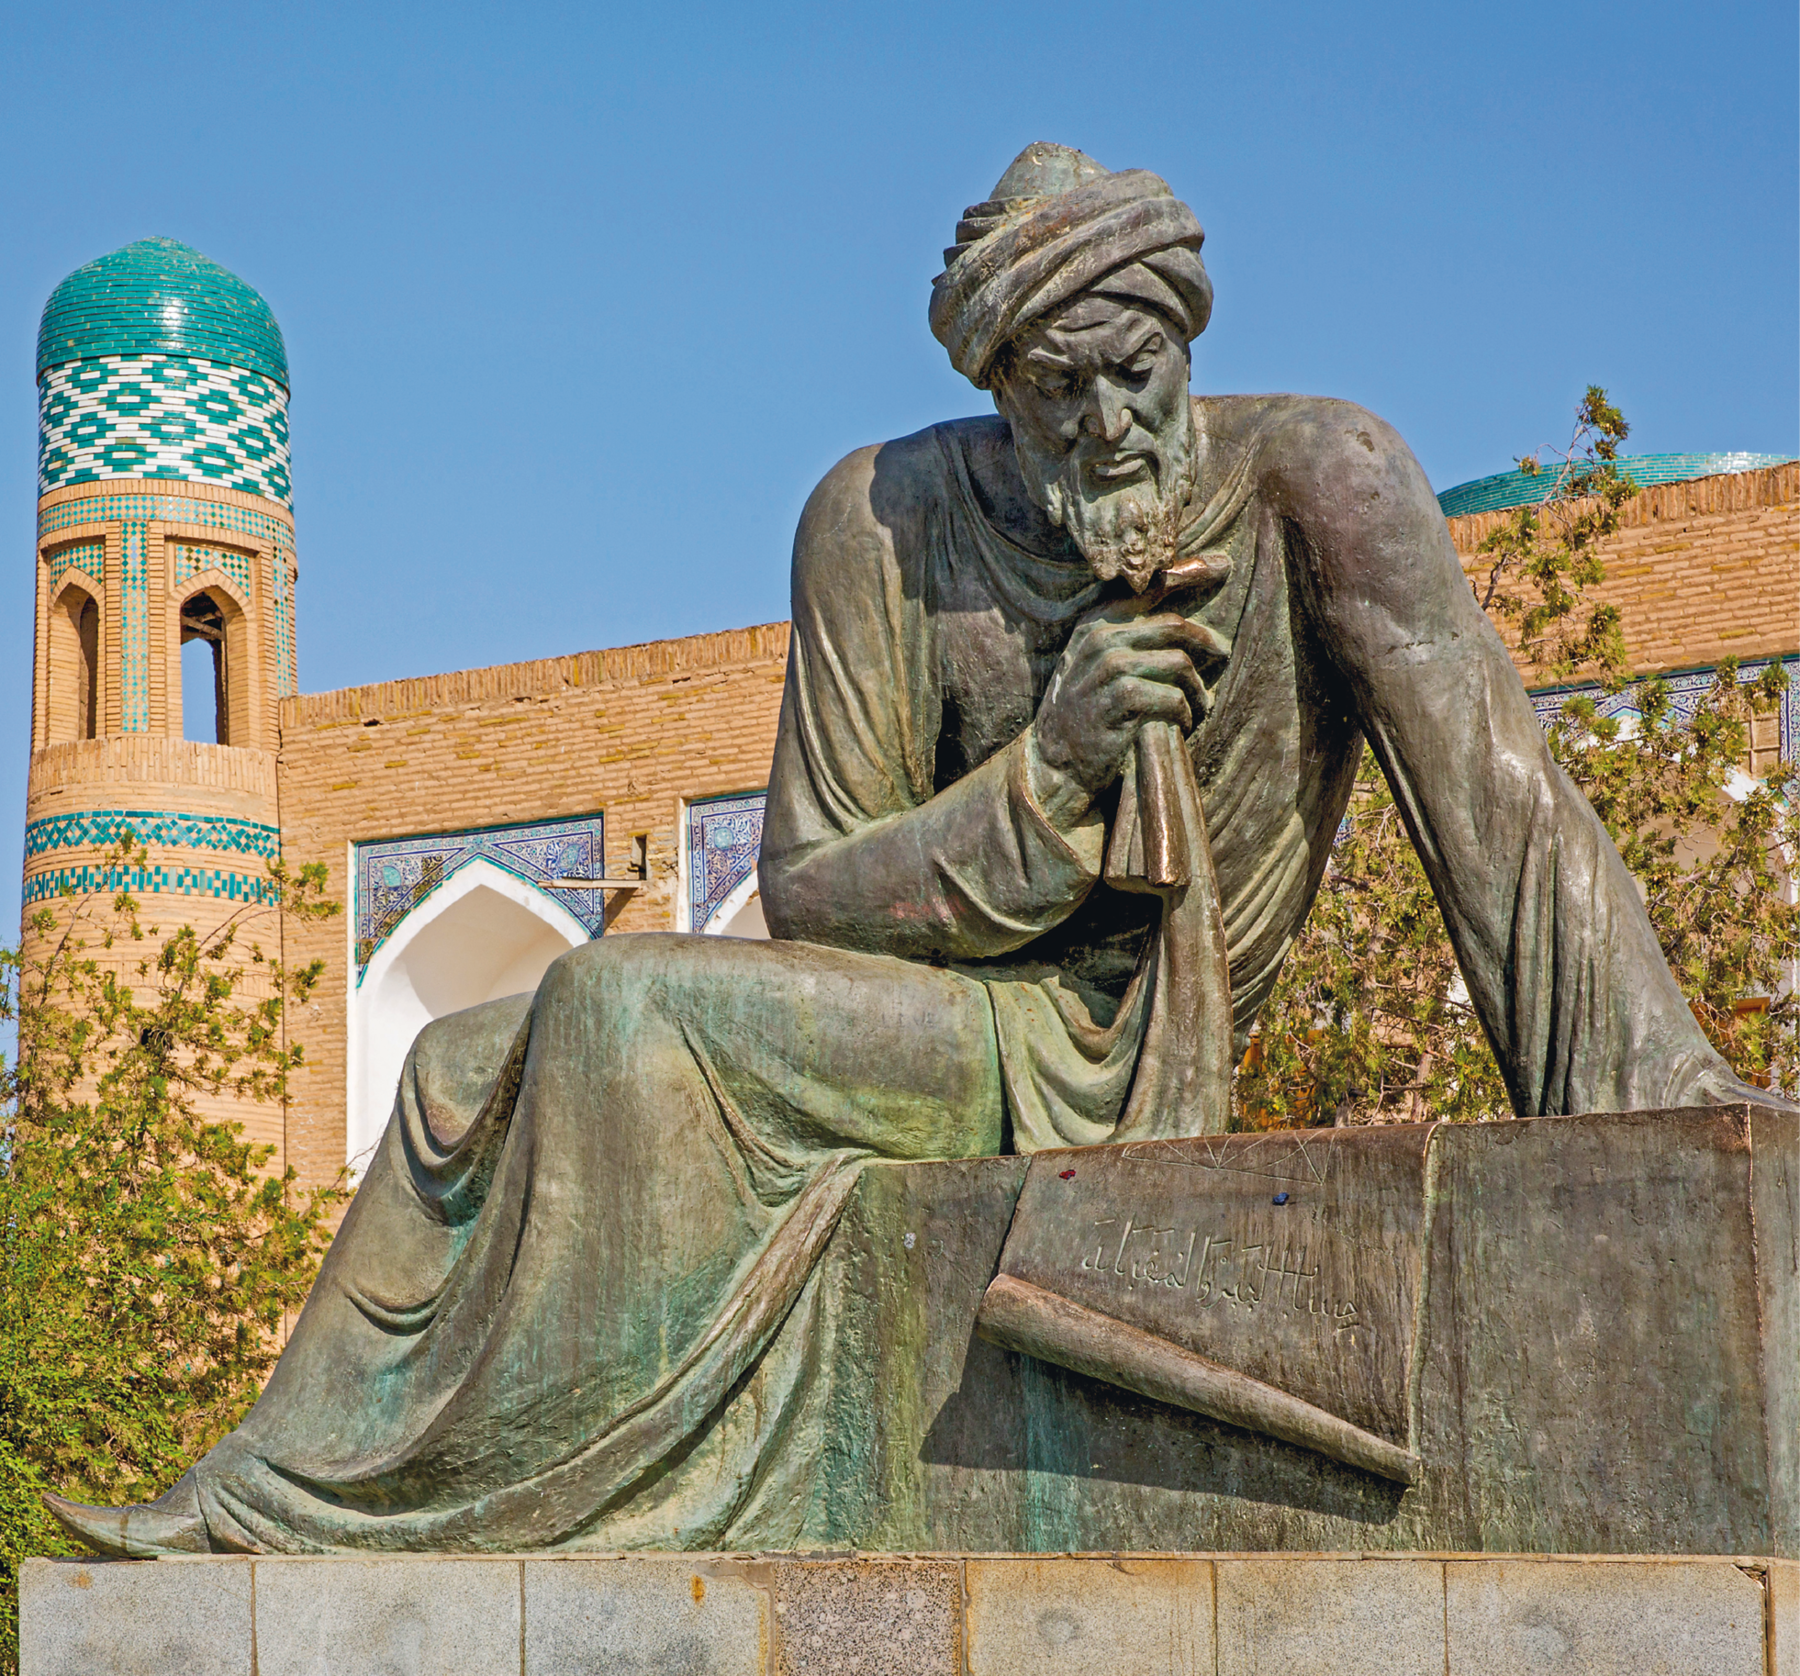 Fotografia. Estátua de um homem árabe de barba, turbante e túnica. Ele está sentado em um patamar com a cabeça para baixo olhando para um papiro aberto. Ao fundo, construção de tijolos com topo em detalhes verdes e brancos.